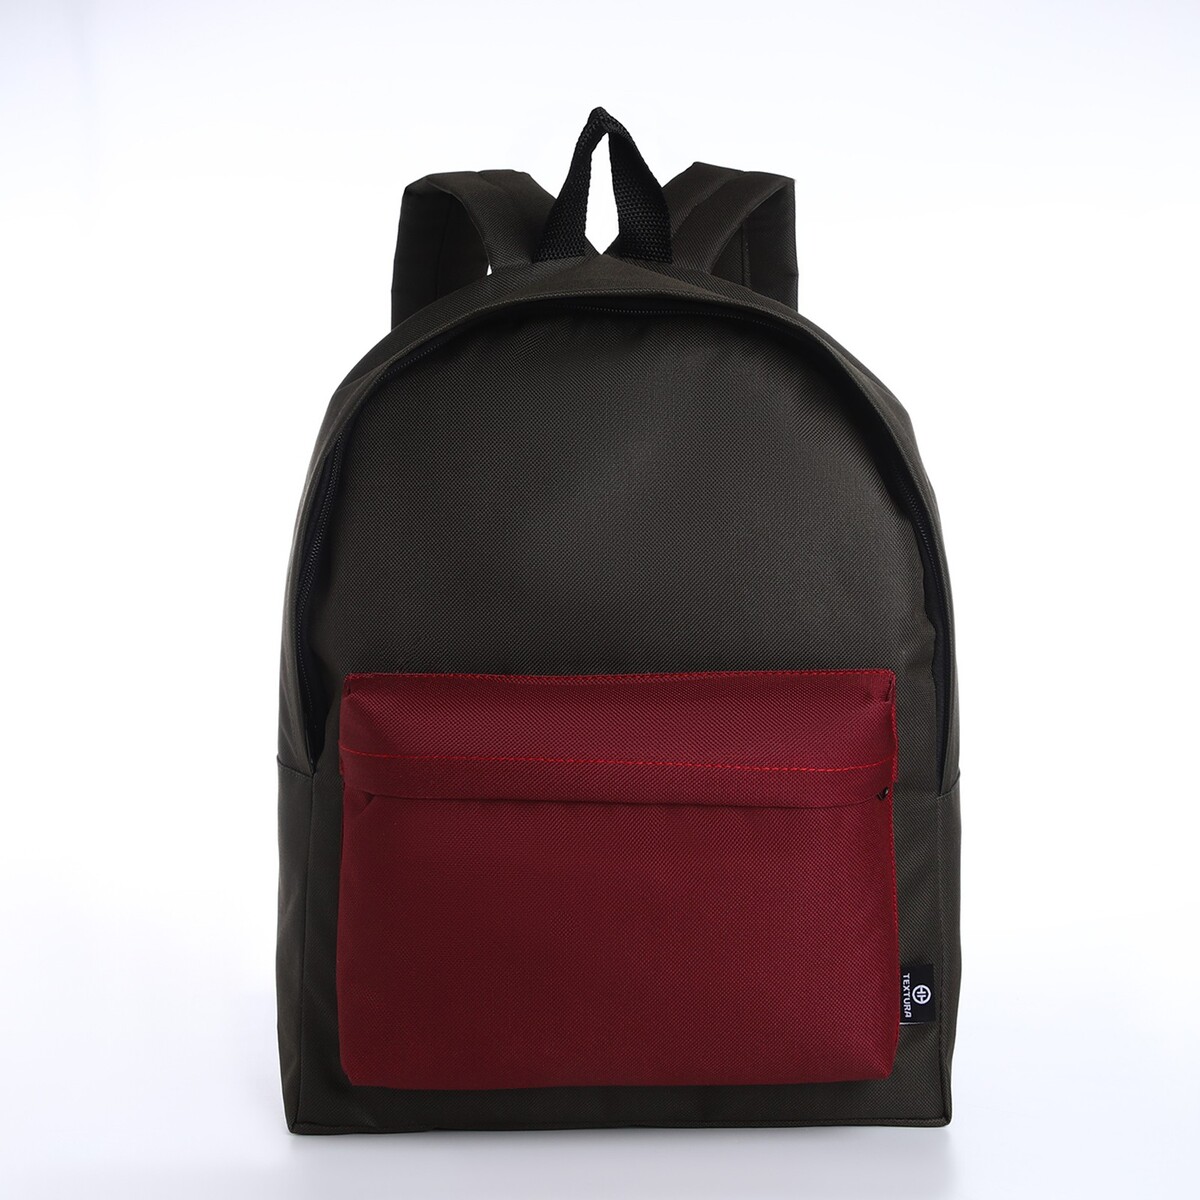 Спортивный рюкзак из текстиля на молнии textura, 20 литров, цвет хаки/бордовый pixel bag рюкзак с led дисплеем pixel plus red line бордовый